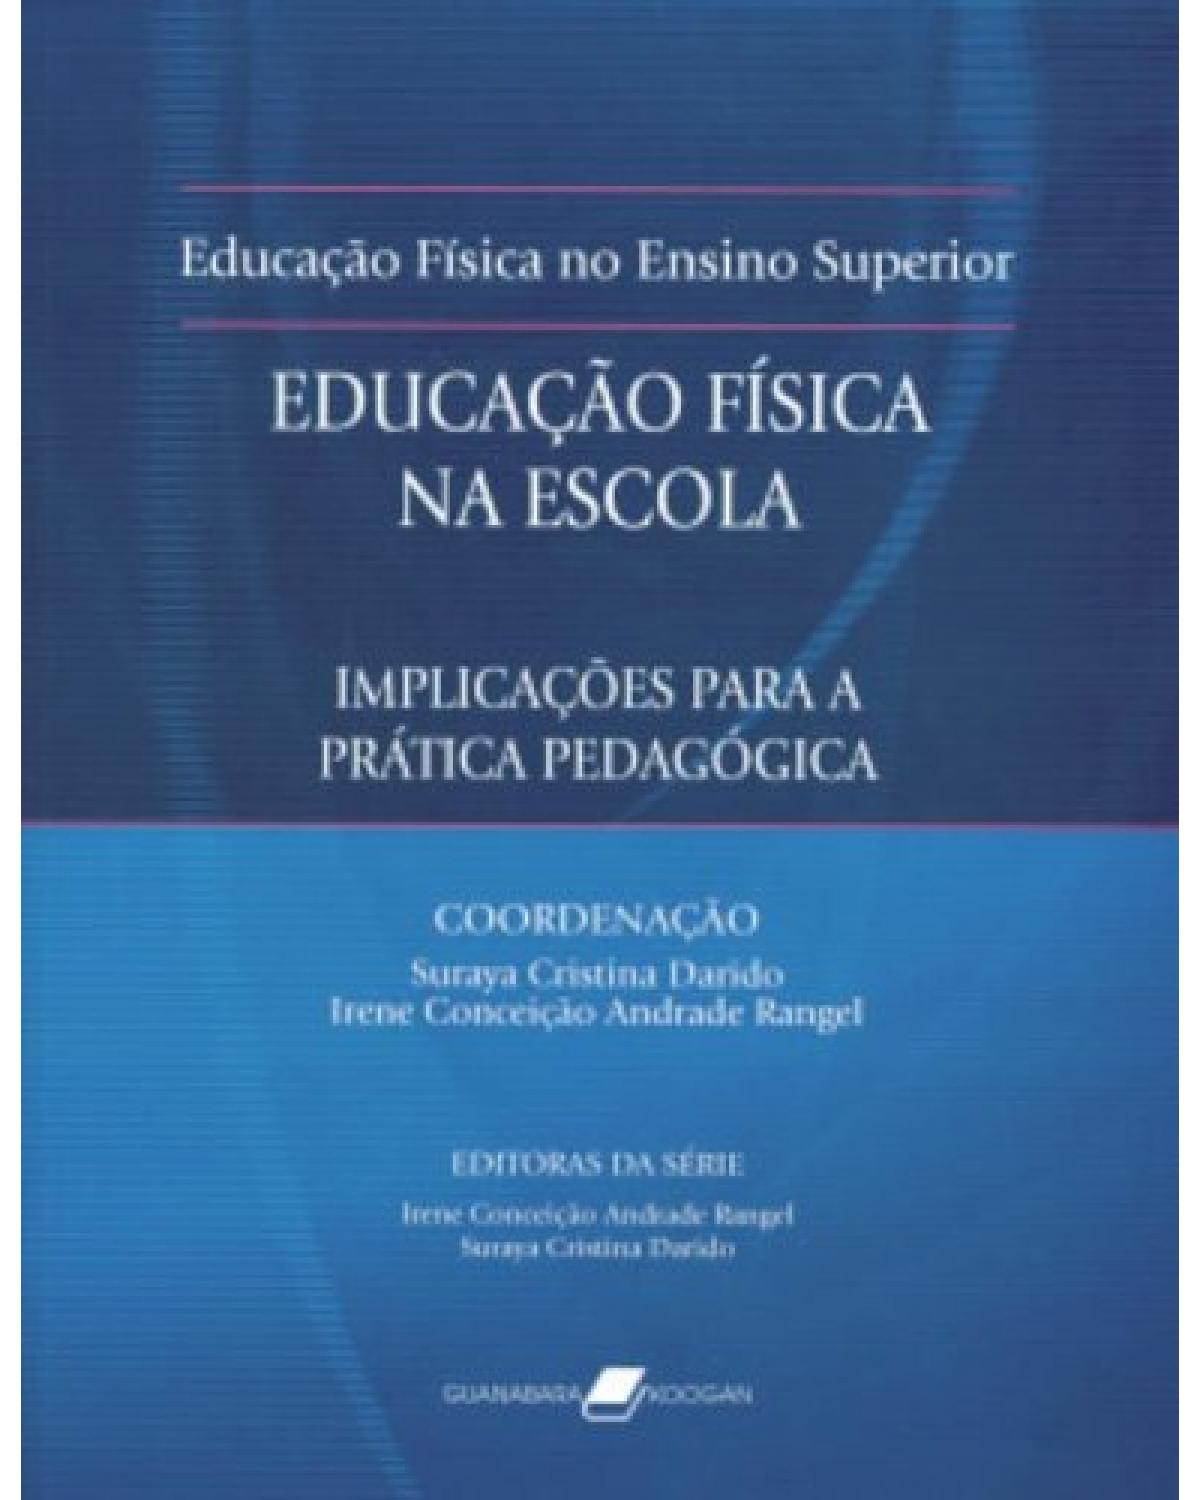 Educação física na escola - Implicações para a prática pedagógica - 2ª Edição | 2011